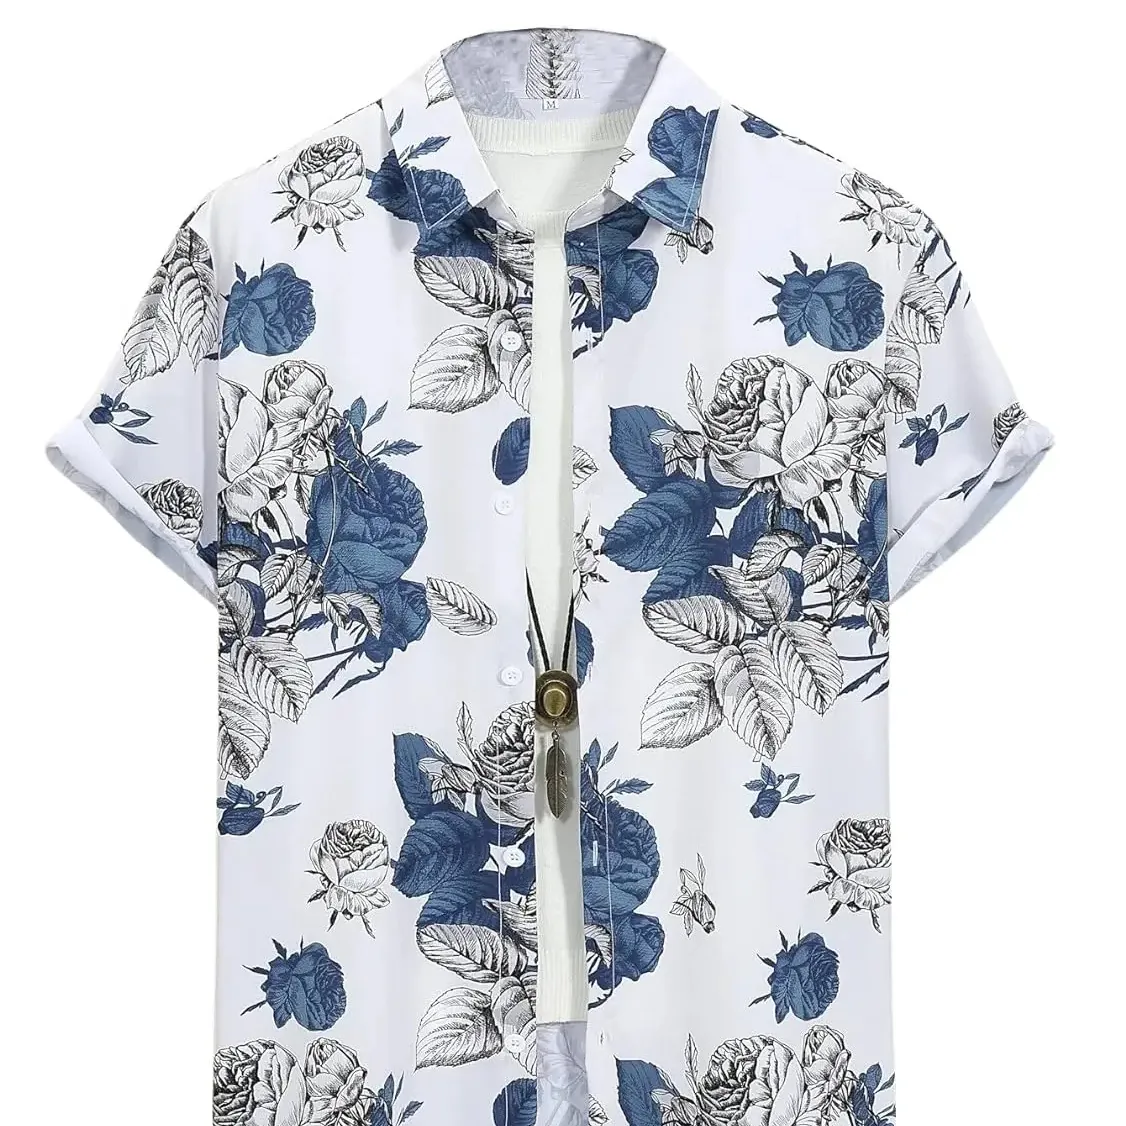 Camisas estampadas de algodón 100%, camisa ligera con estampado Floral para hombres y niños, ropa de verano para la playa